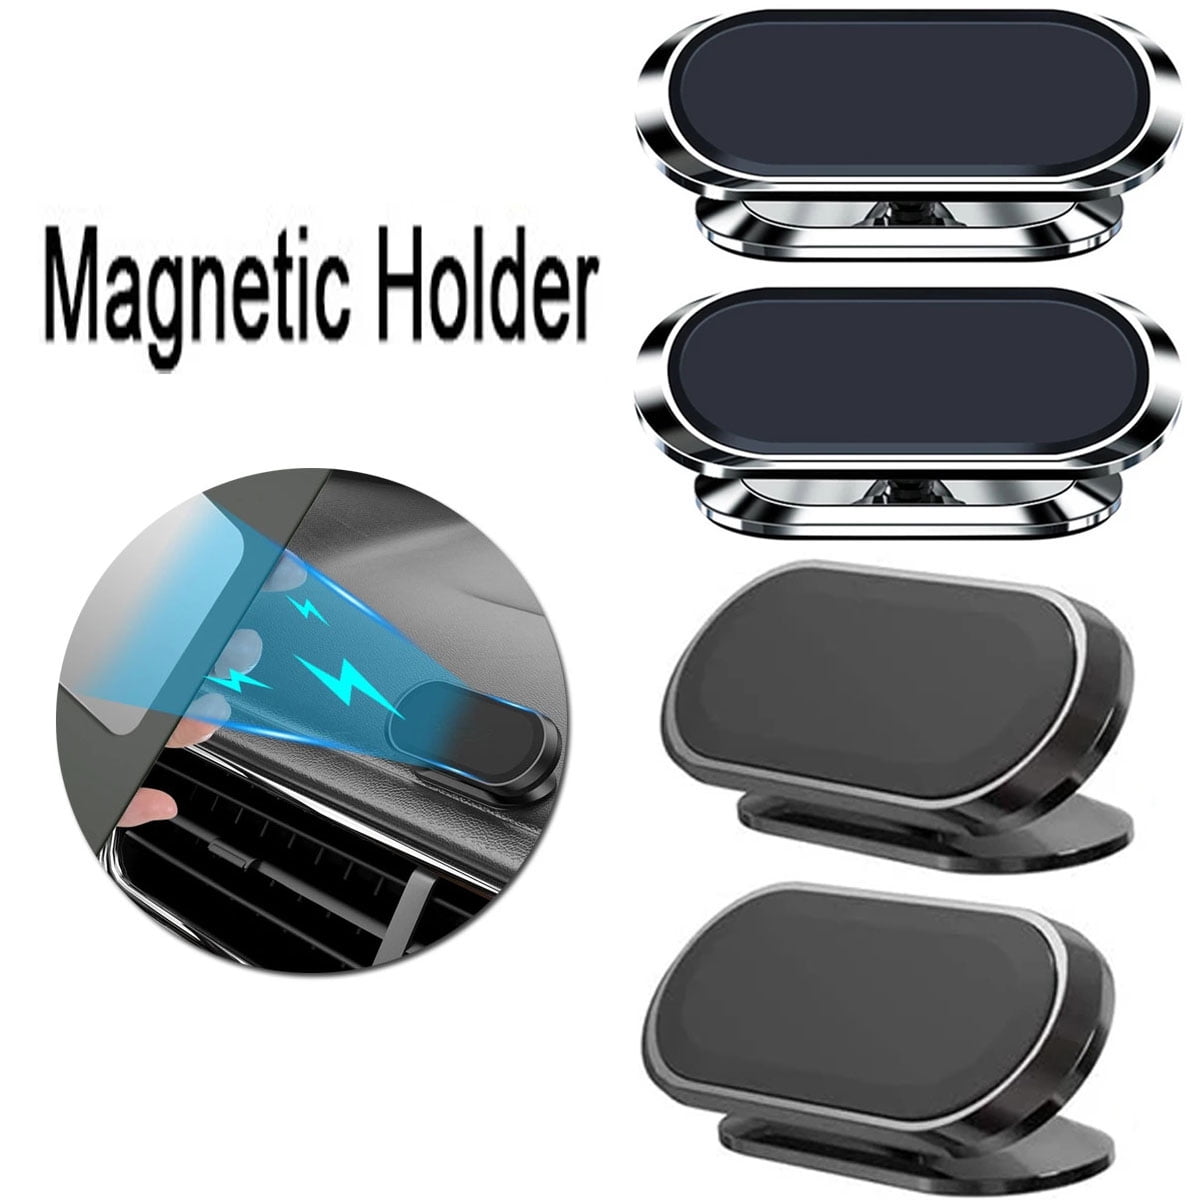 Petites plaques magnétiques autocollantes 20x20 mm - HORNBACH